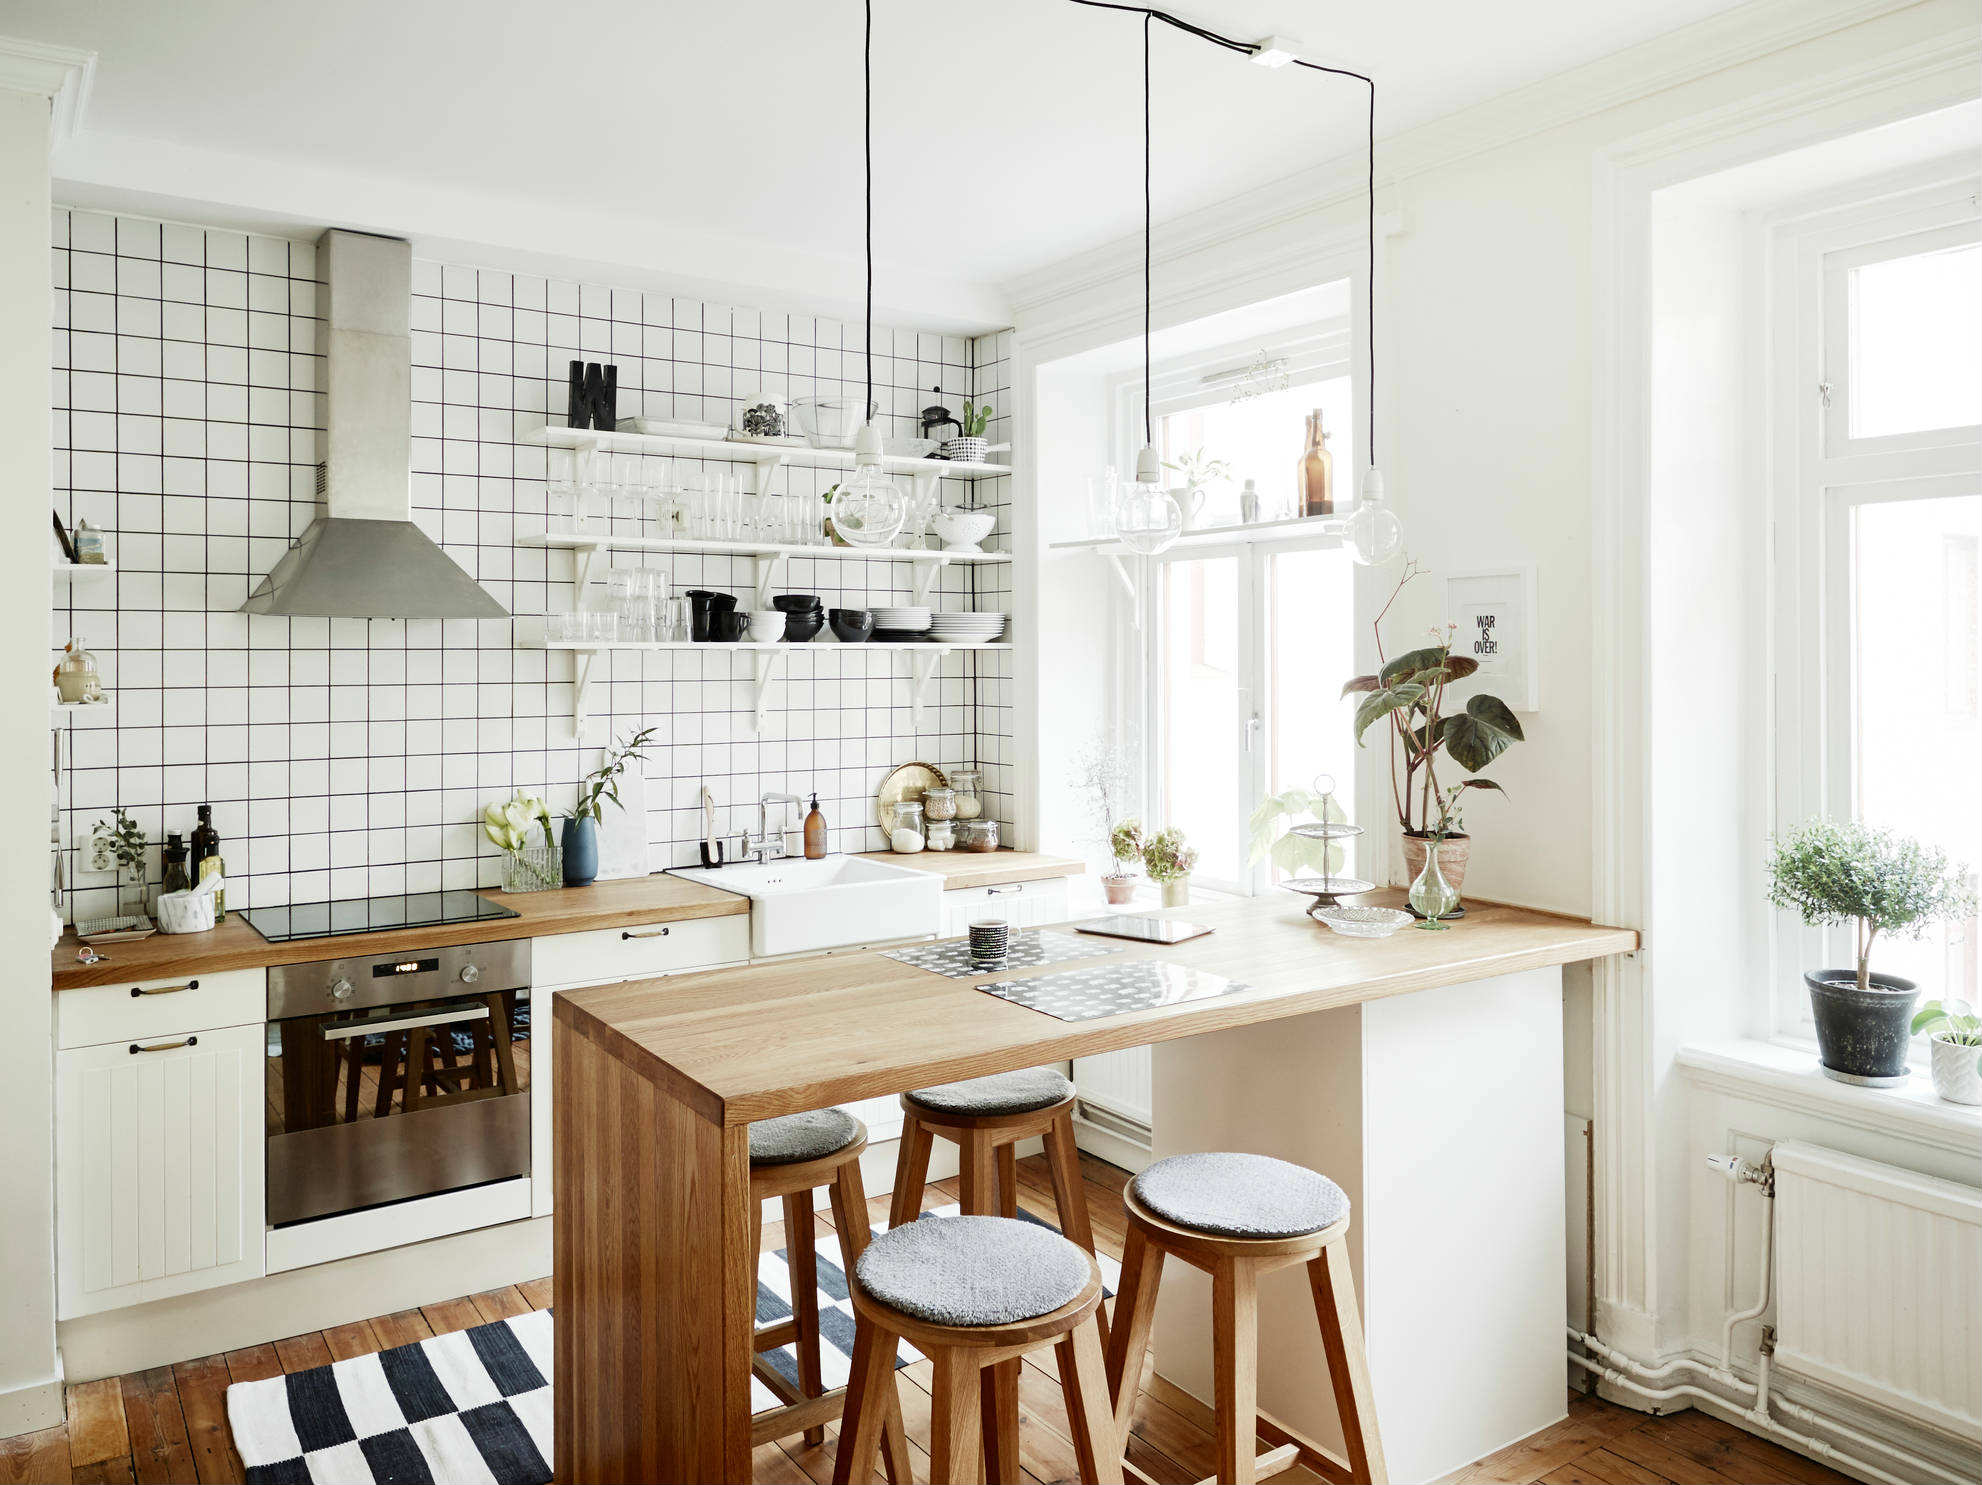 Desain Dapur Scandinavian Interior Dapur Mungil Yang Serba Putih